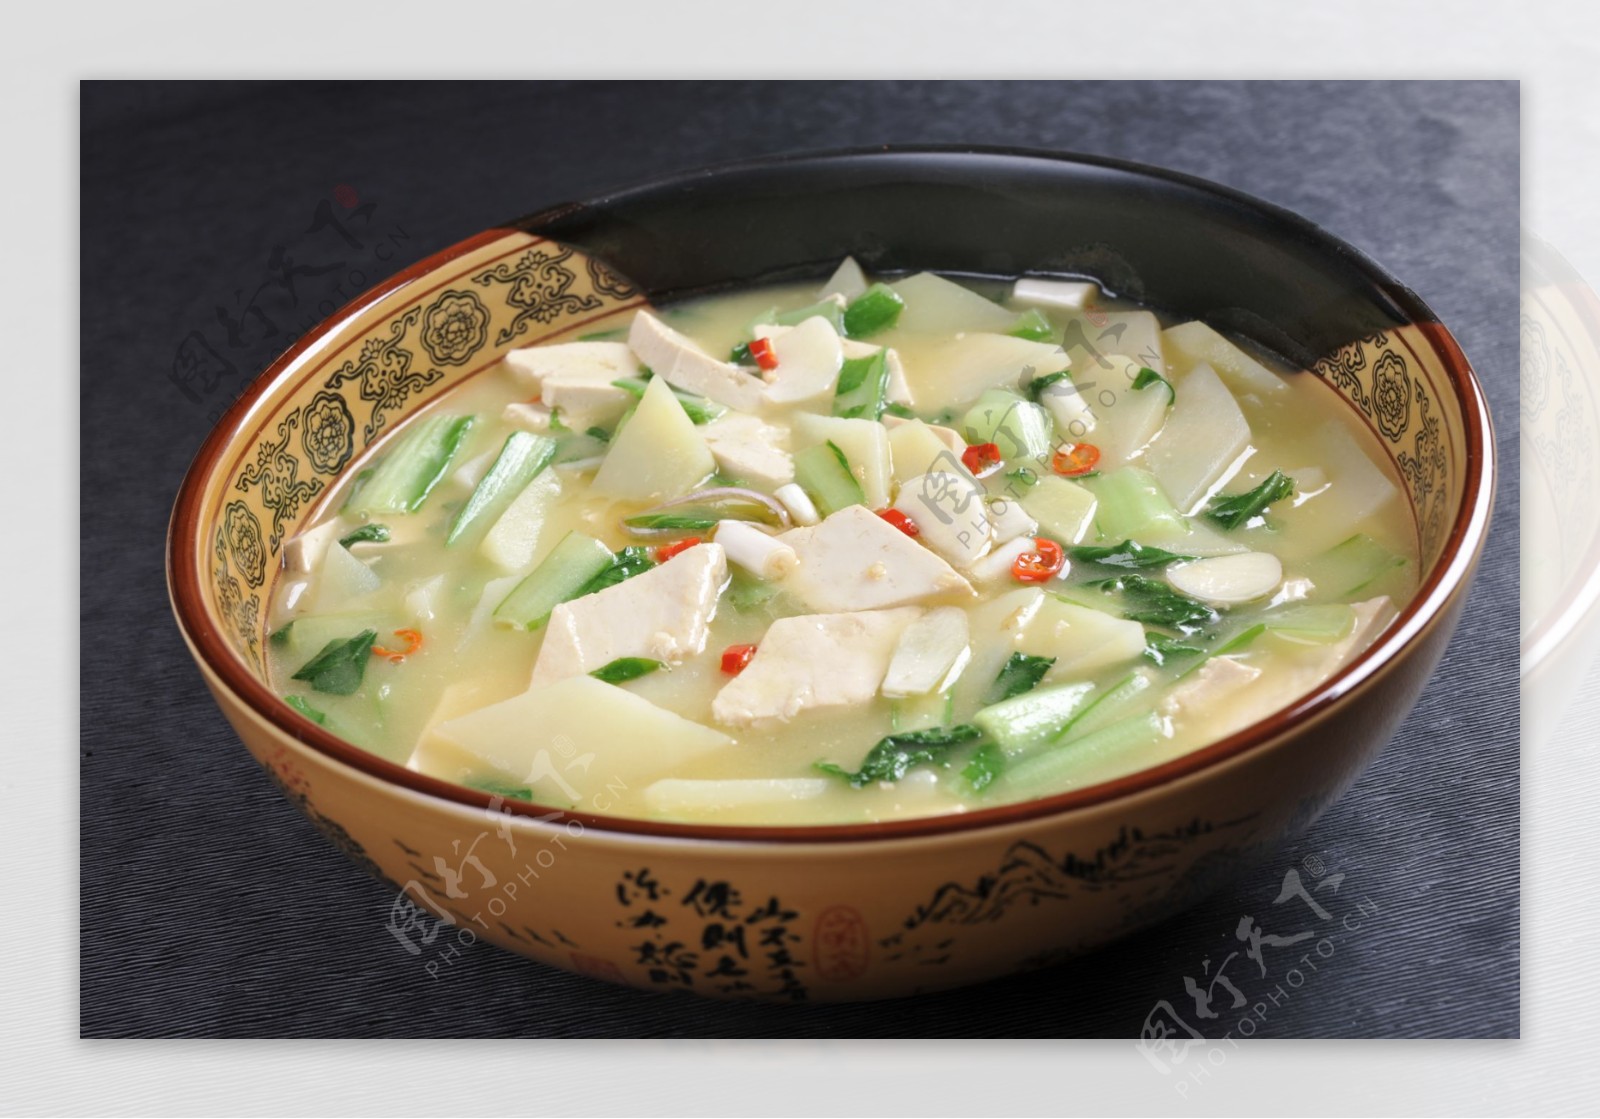 辣白菜豆腐锅,辣白菜豆腐锅的家常做法 - 美食杰辣白菜豆腐锅做法大全